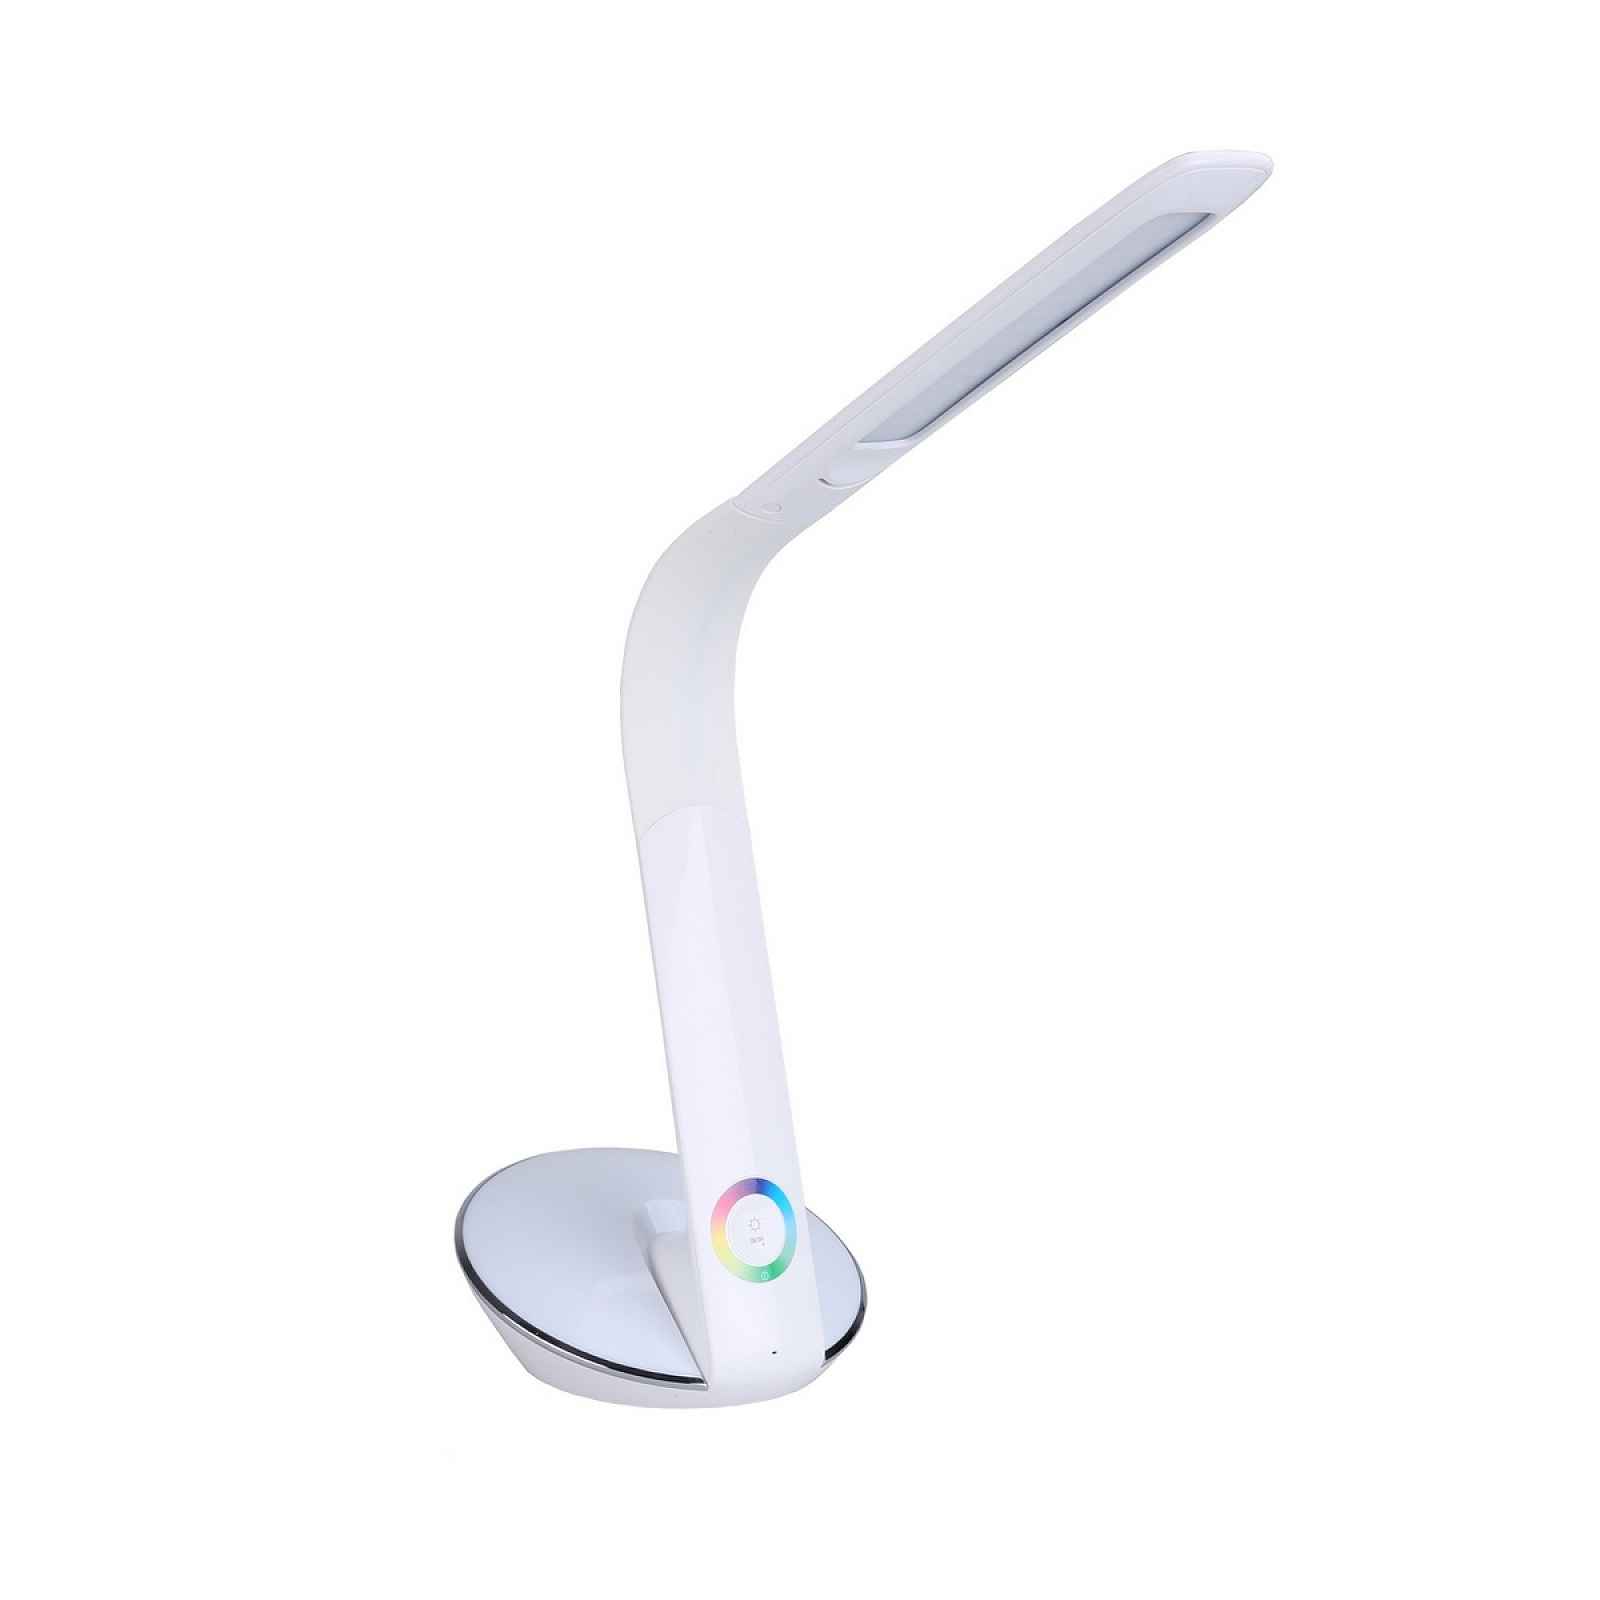 Stolní LED lampa Panlux ODETTE s RGB podsvícením, bílá